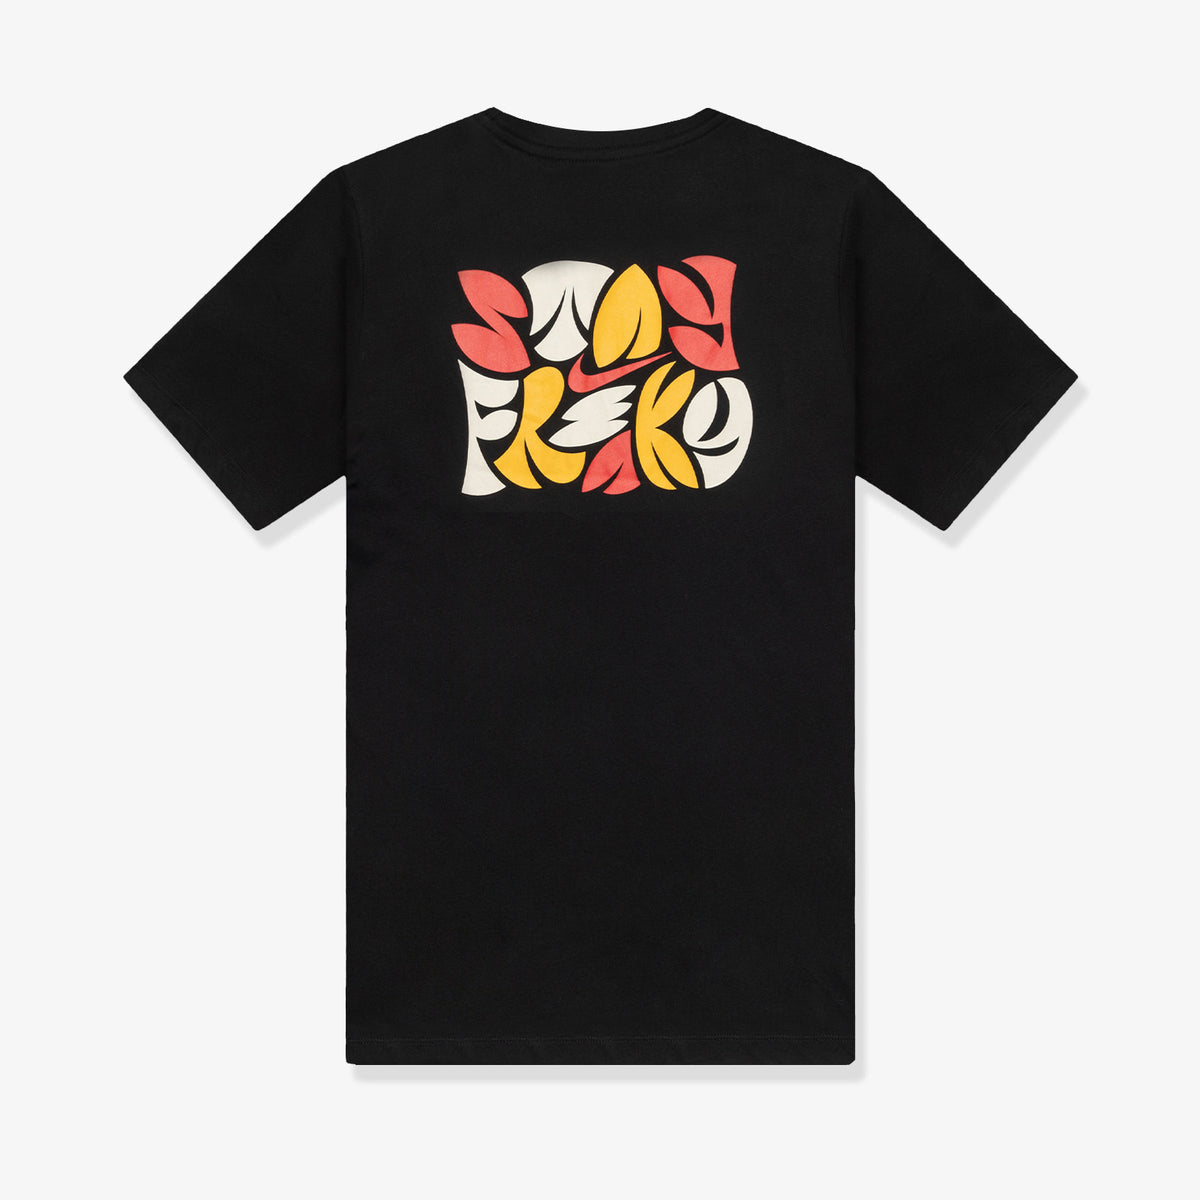 Giannis Floral Graphic Dri-FIT T-Shirt - Black